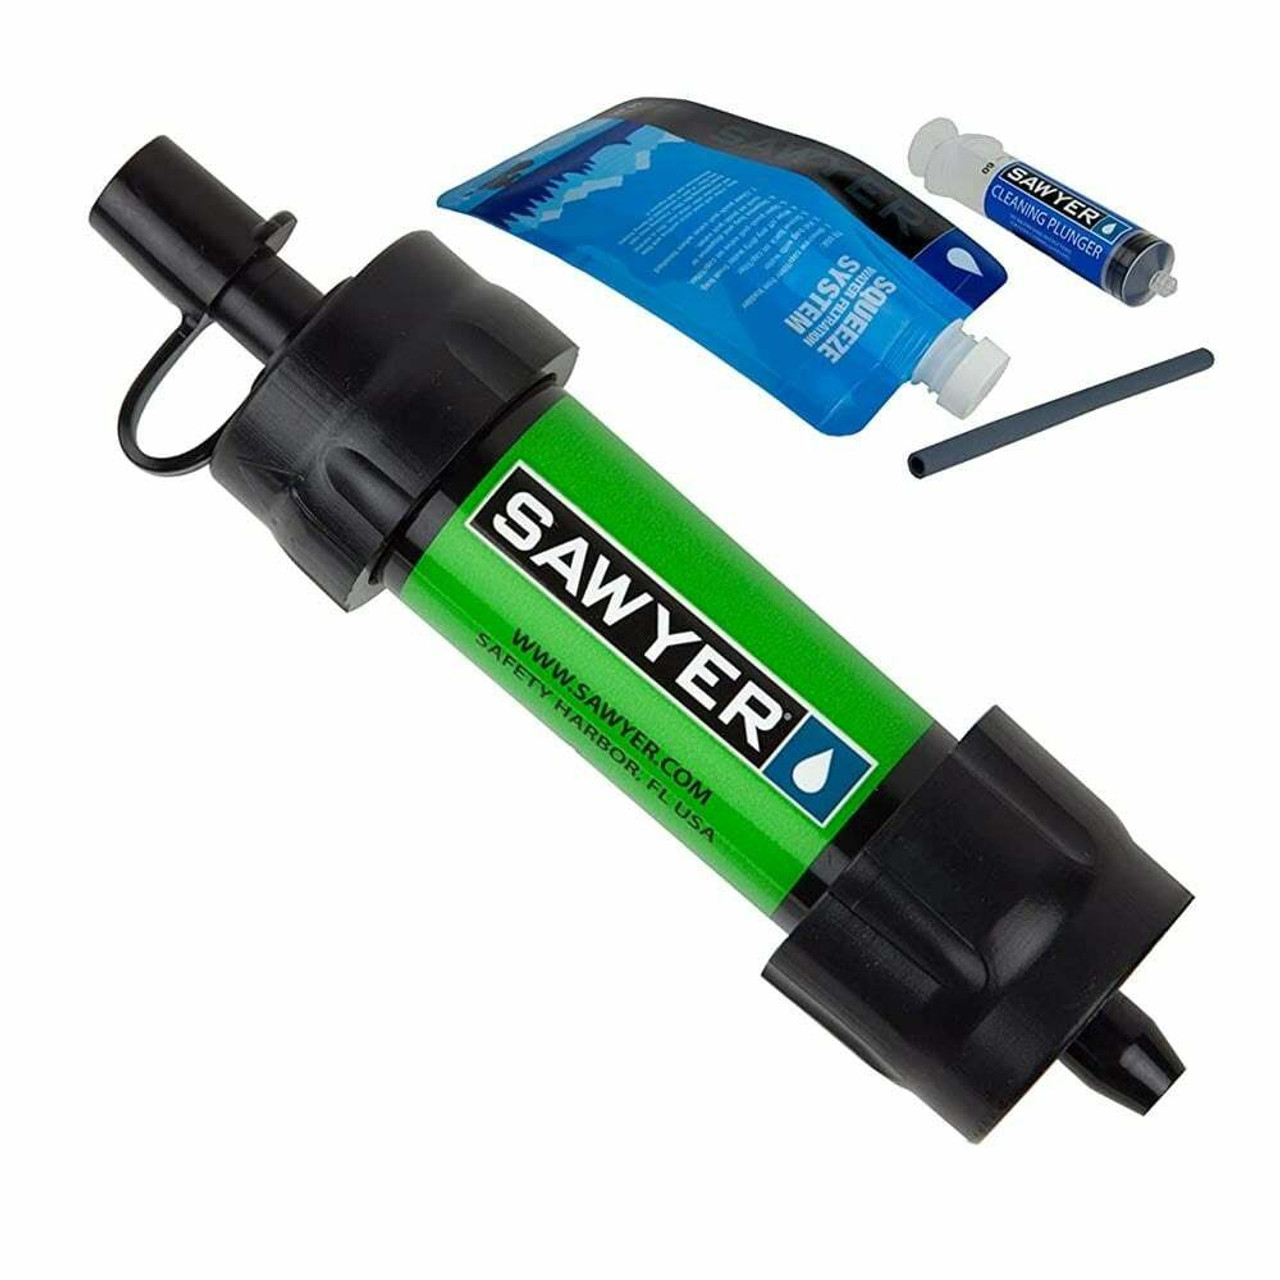 Sawyer International Mini Filter | UK | Ultralight Outdoor Gear